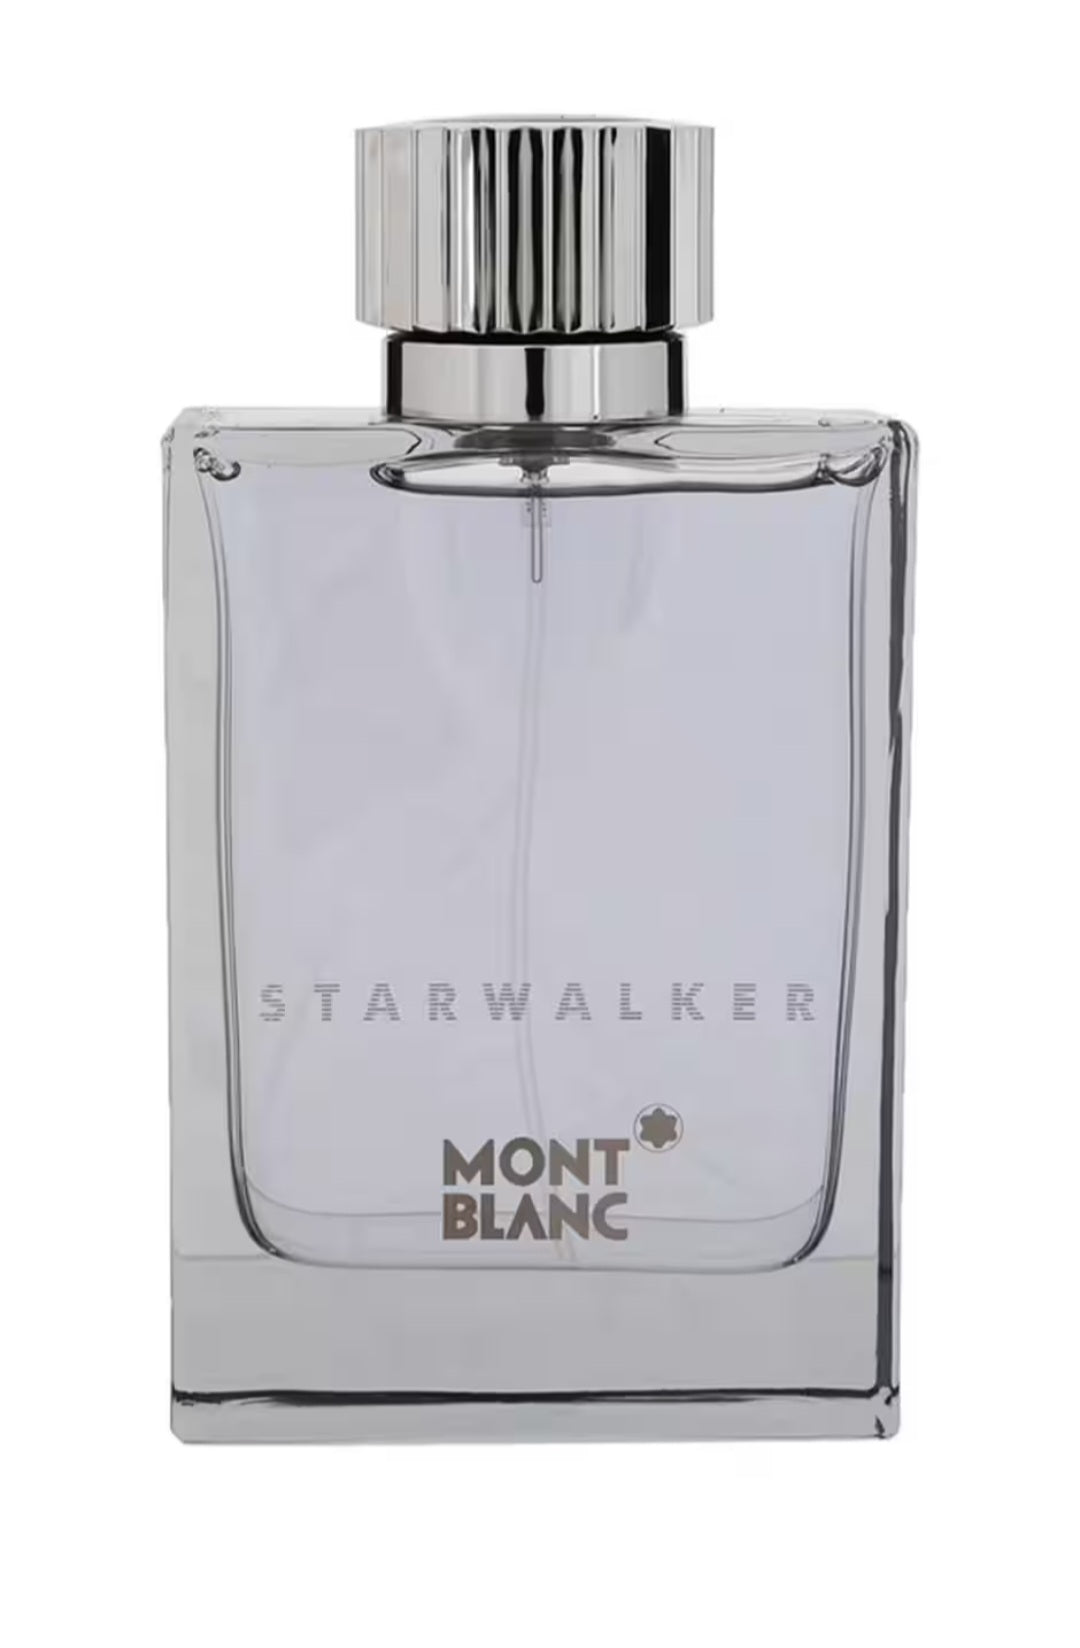 MONTBLANC Starwalker 75ml